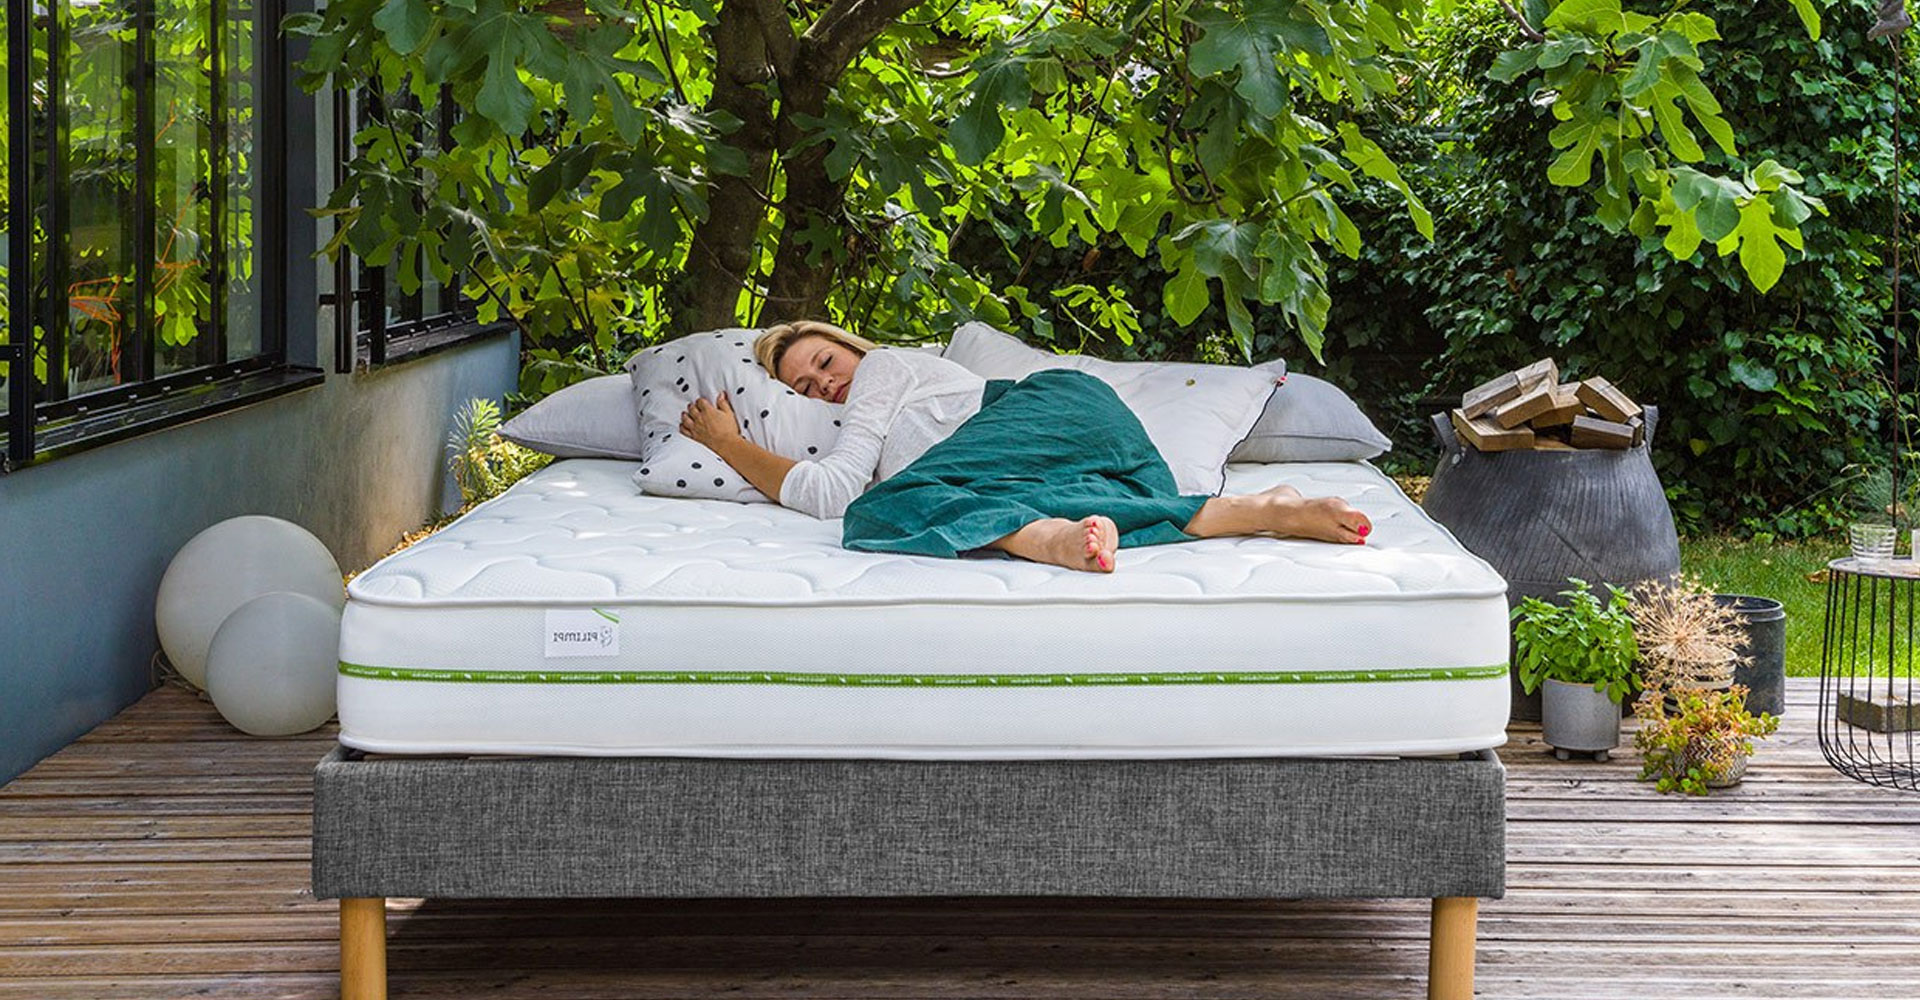 ¿Sabes que también puedes adquirir un colchón ecológico?